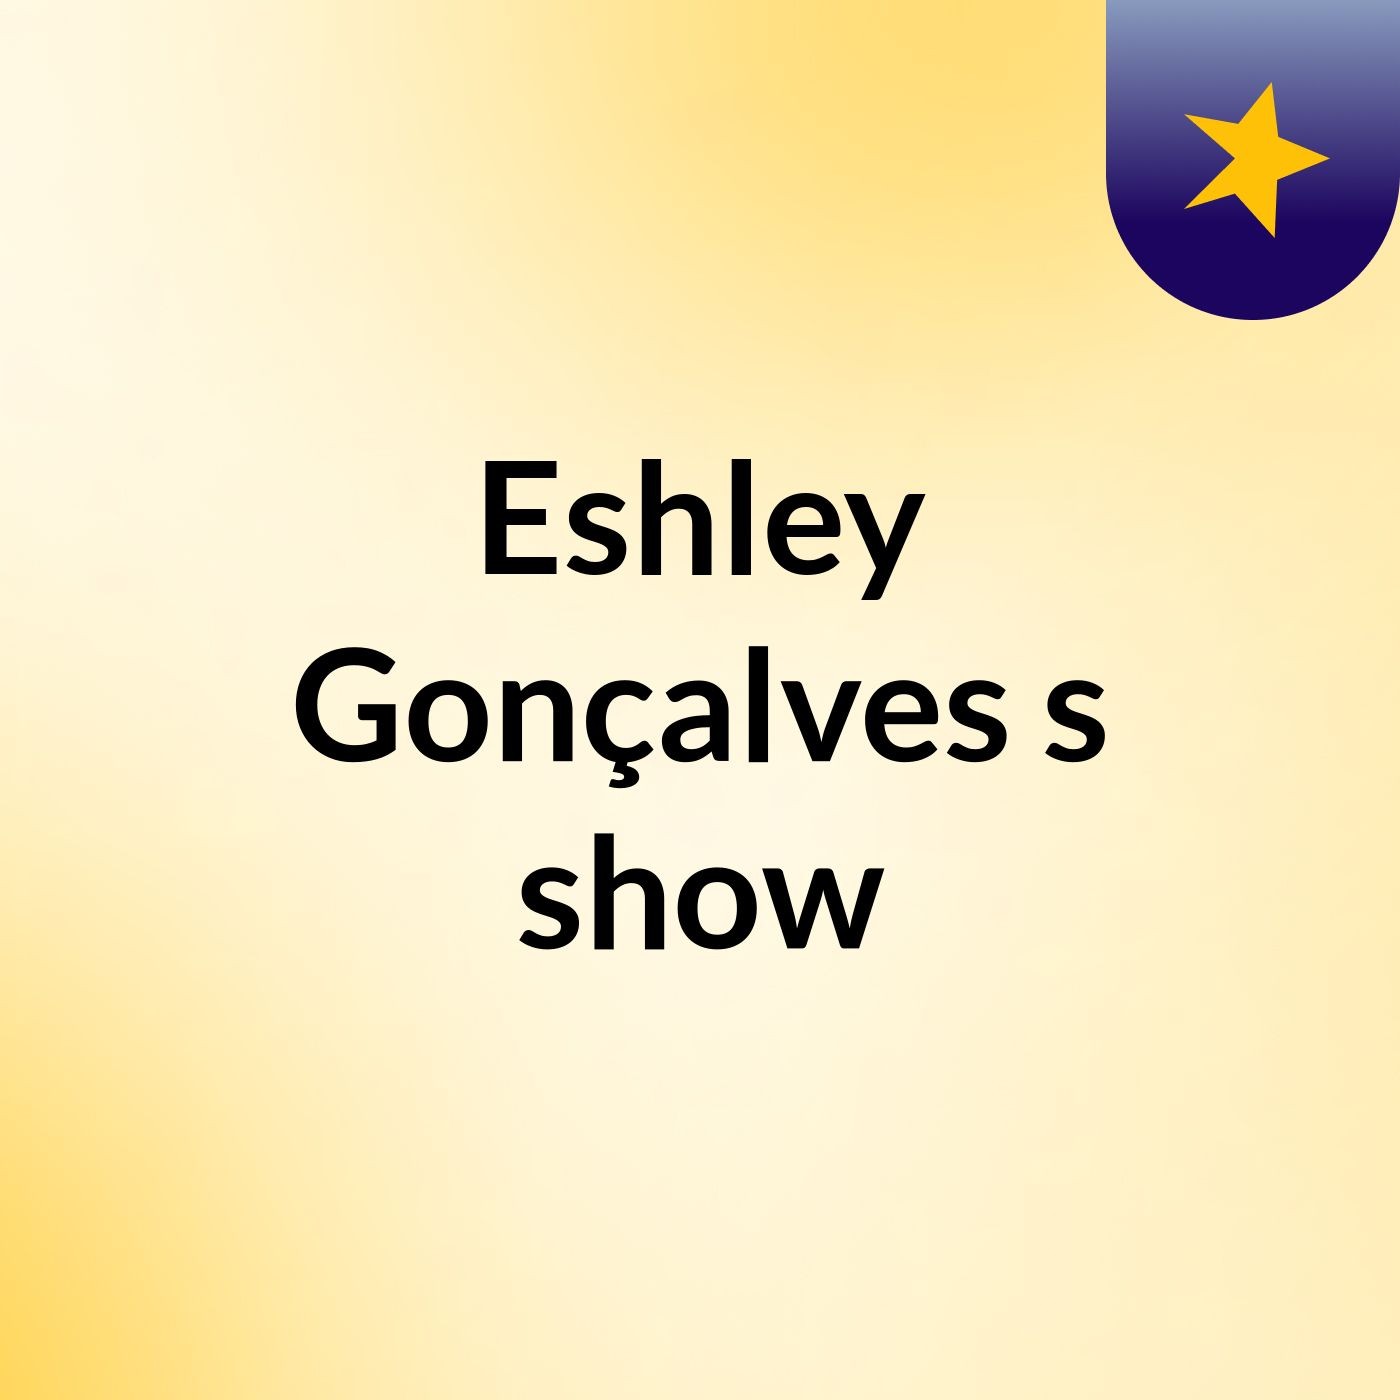 Eshley Gonçalves's show